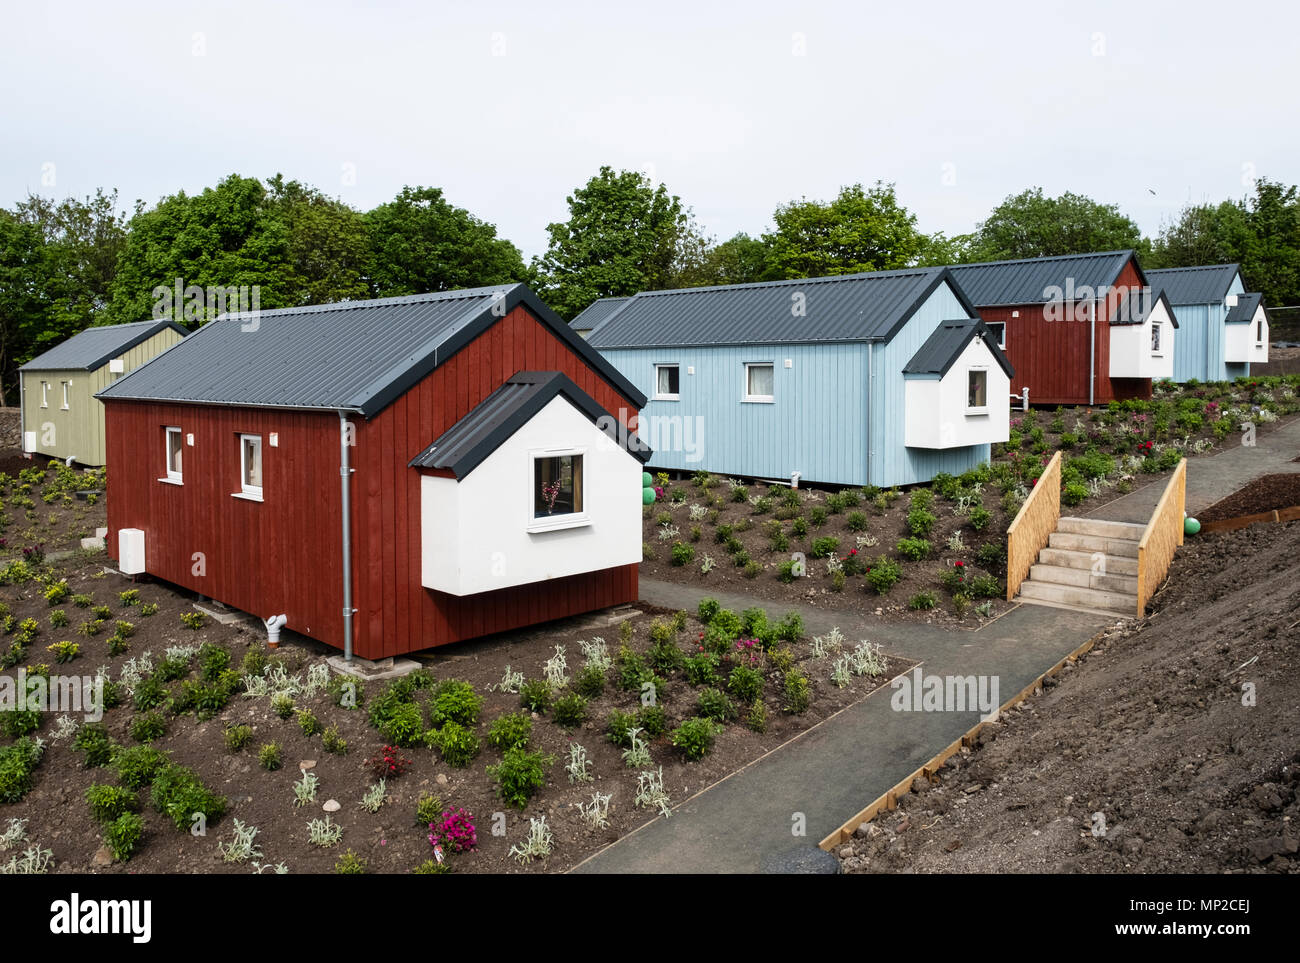 Voir de nouvelles maisons en bois à la morsure sociale Village de Granton construit par morsure sociale organisation pour les sans-abri, Edinburgh, Scotland, United Kin Banque D'Images